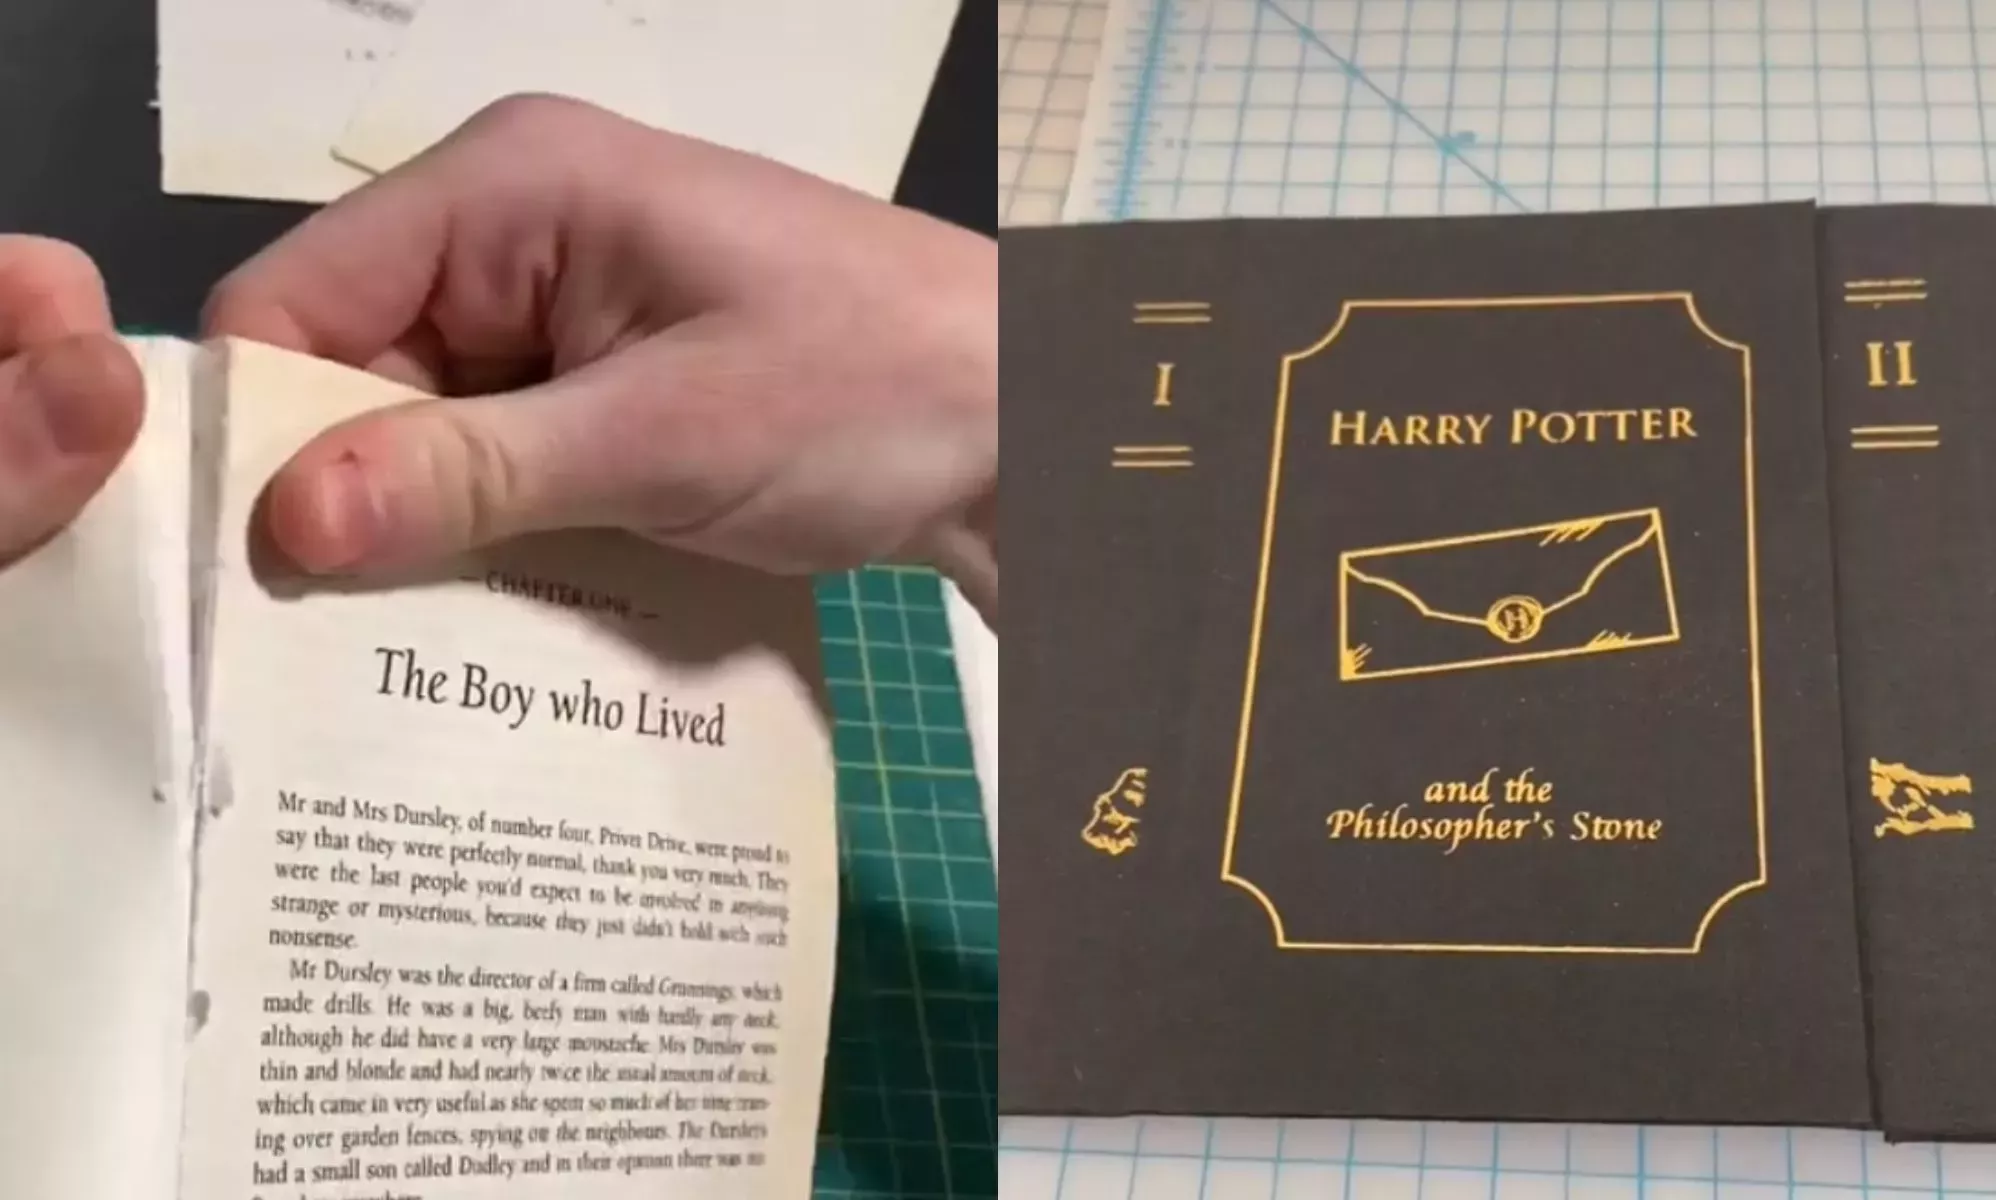 Un artista transexual revende libros de Harry Potter sin el nombre de JK Rowling, y es una genialidad